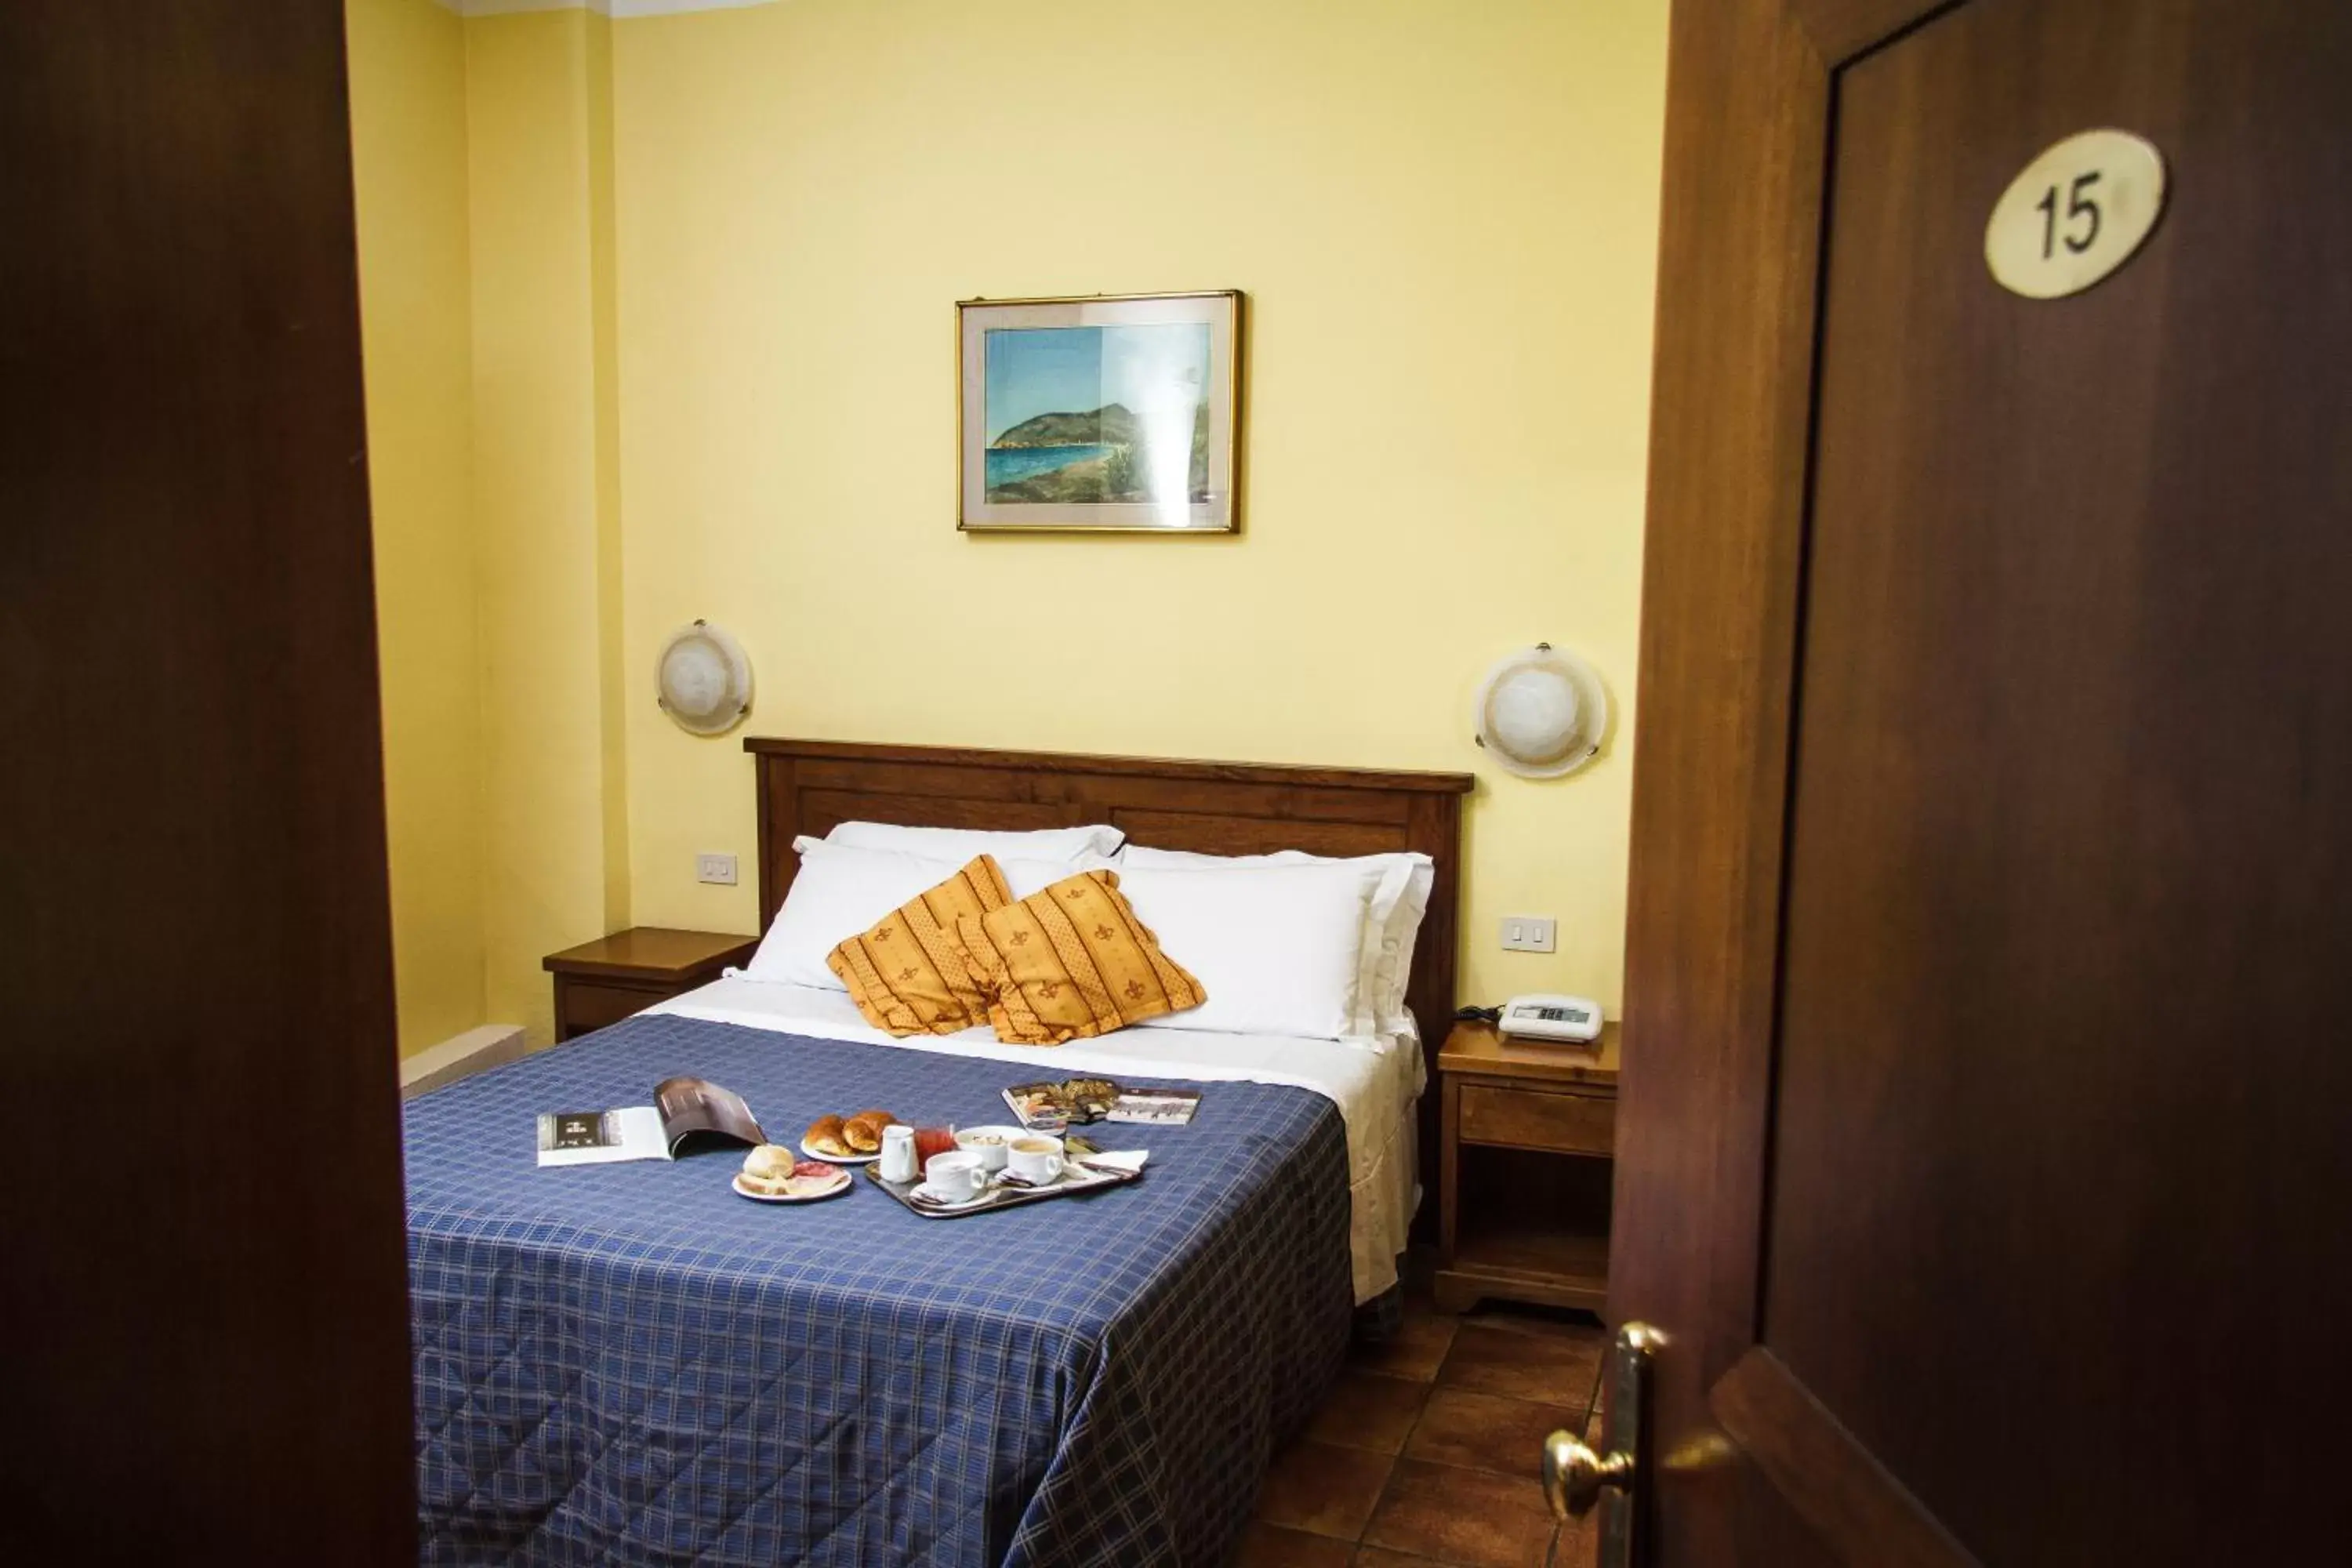 Bedroom, Room Photo in Hotel Nizza